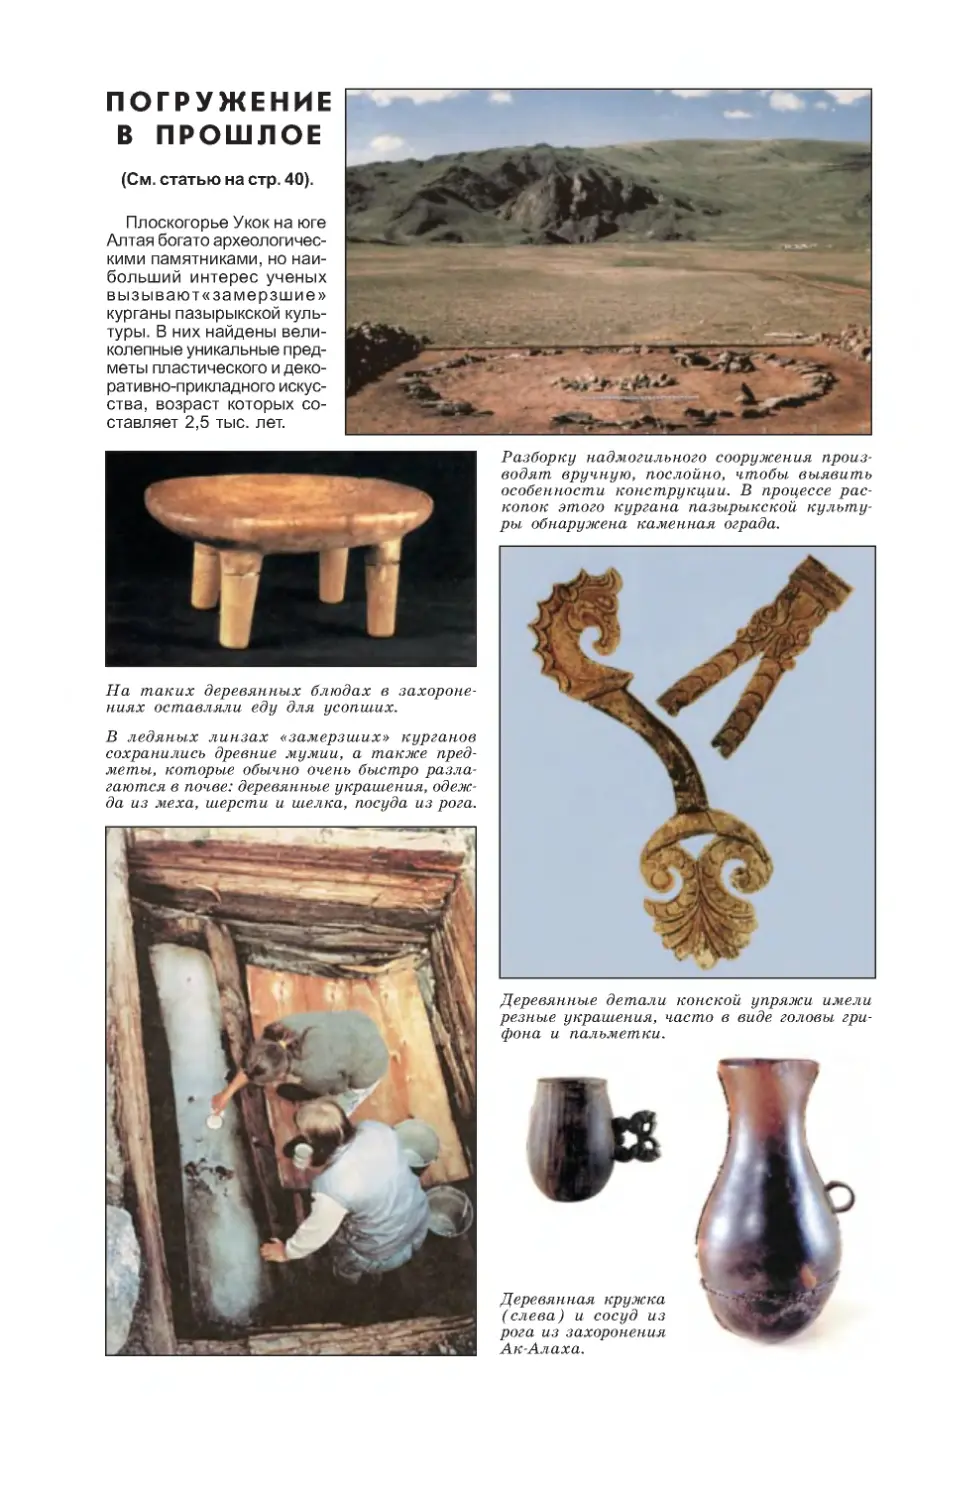 Уникальные археологические находки, сделанные на плоскогорье Укок на Алтае